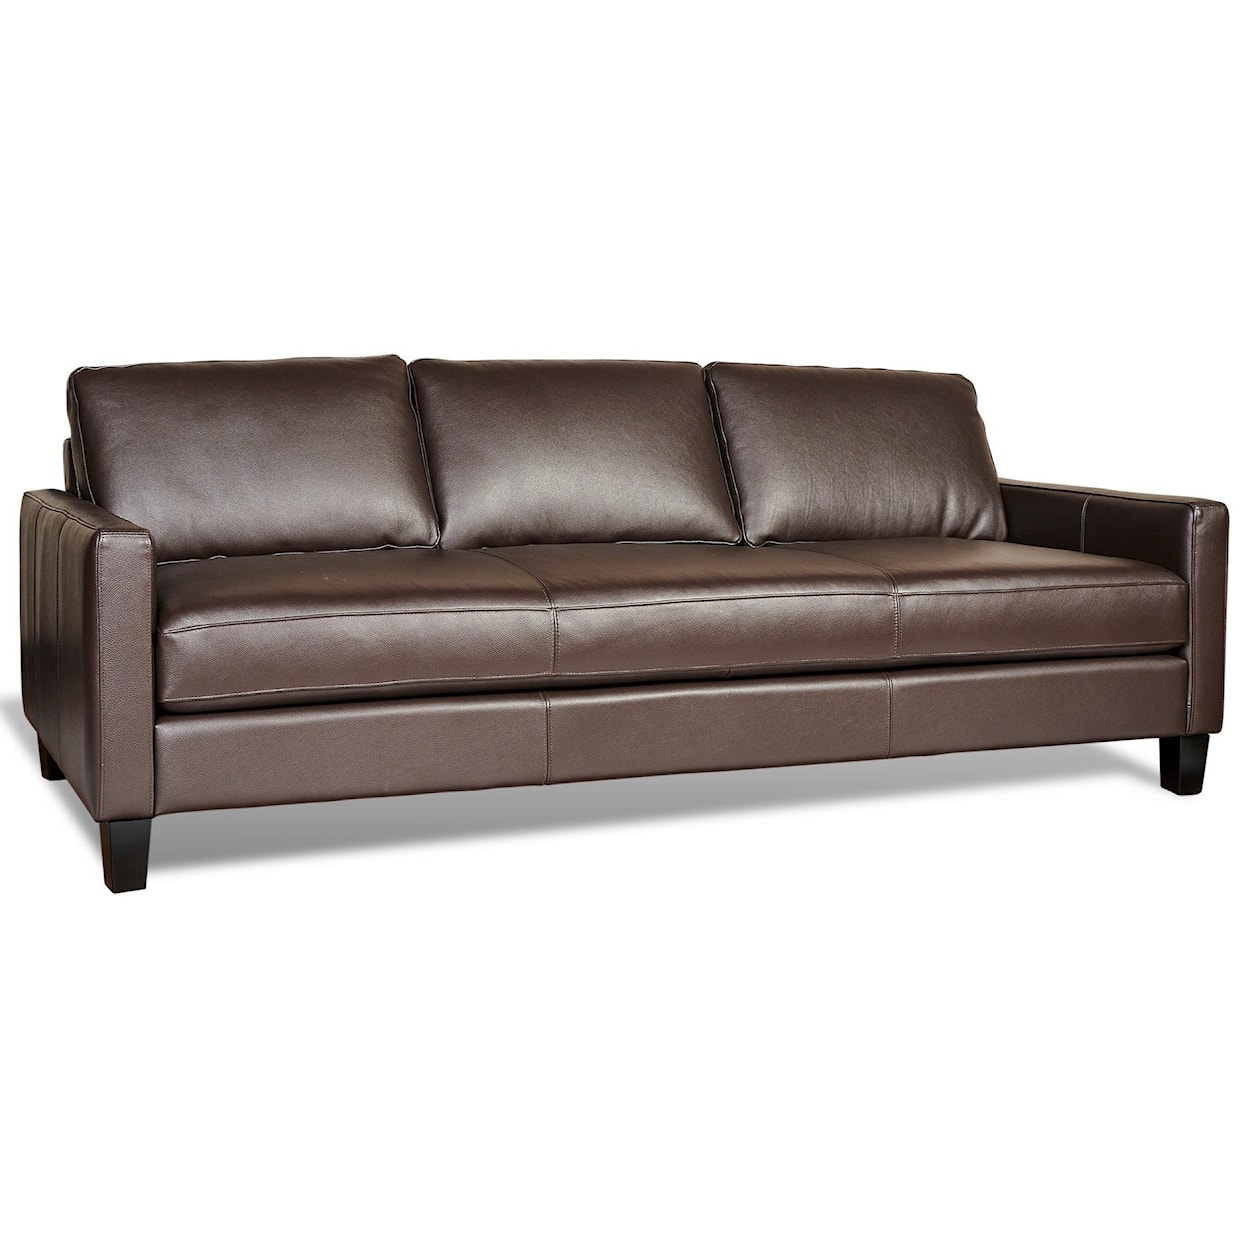 Castleridge Leather Urban Leather Sofa